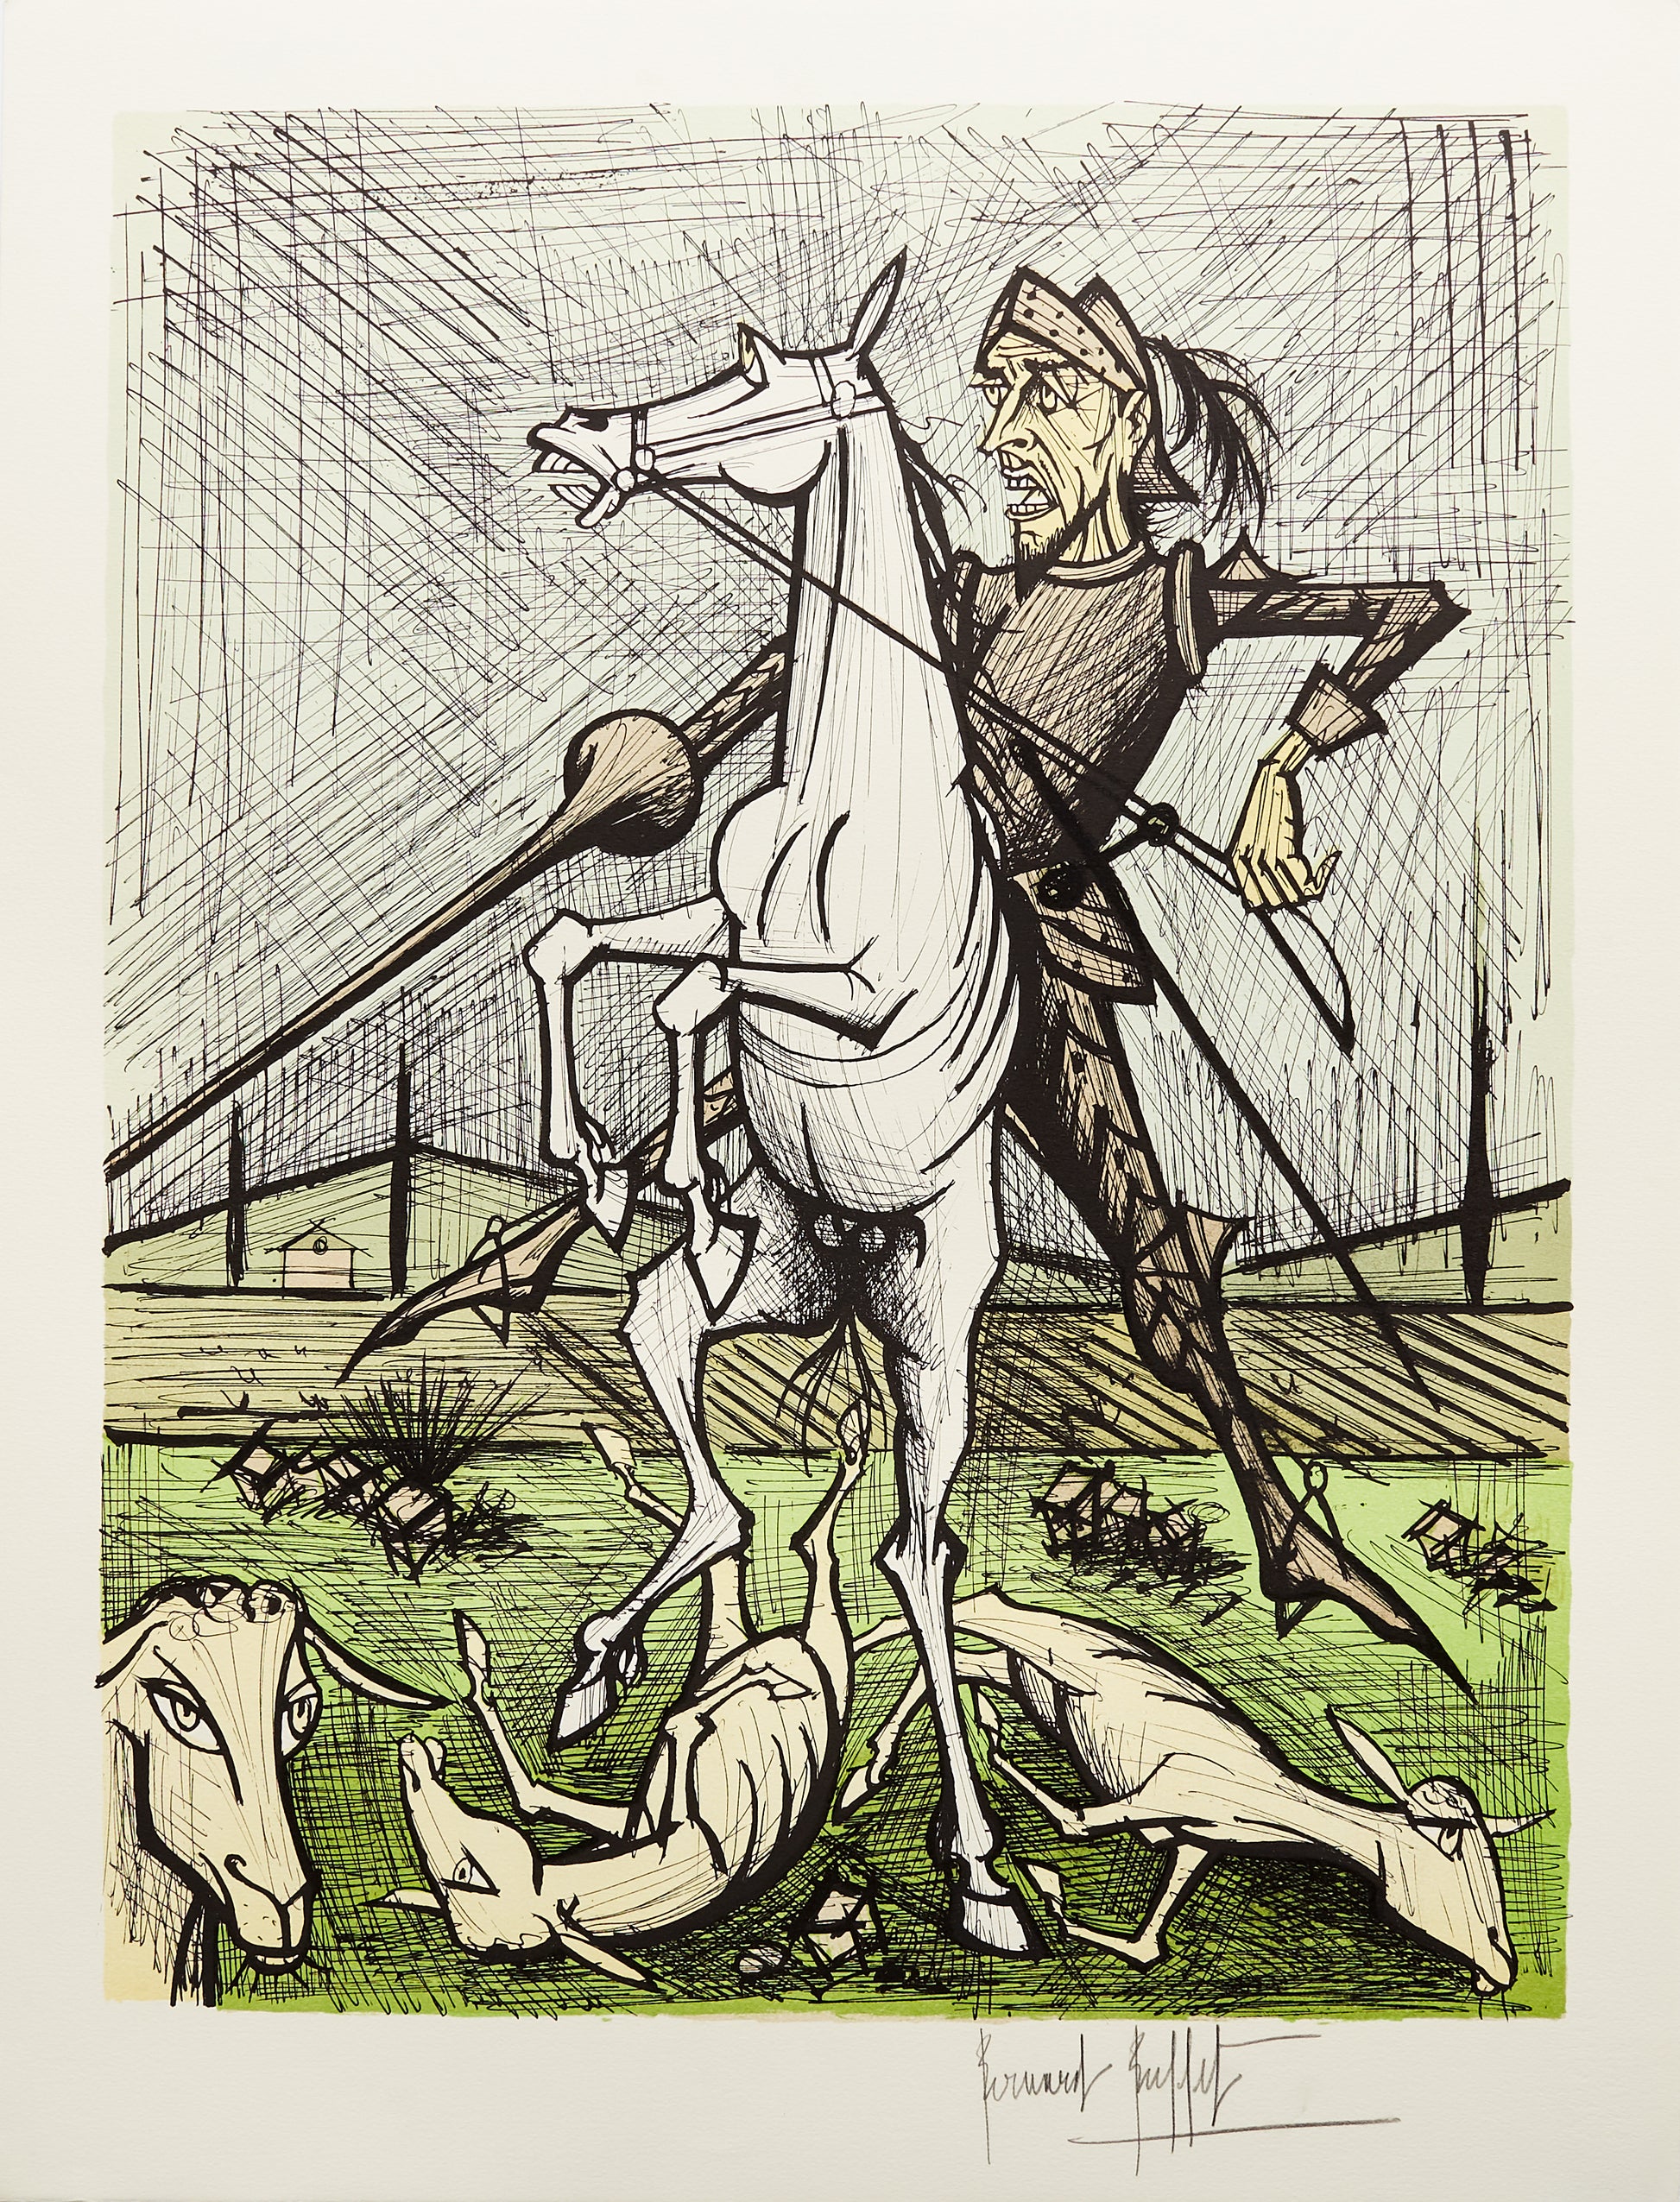 Des Troupeaux de Moutons VI - Don Quichotte by Bernard Buffet, 1989 - Mourlot Editions - Fine_Art - Poster - Lithograph - Wall Art - Vintage - Prints - Original